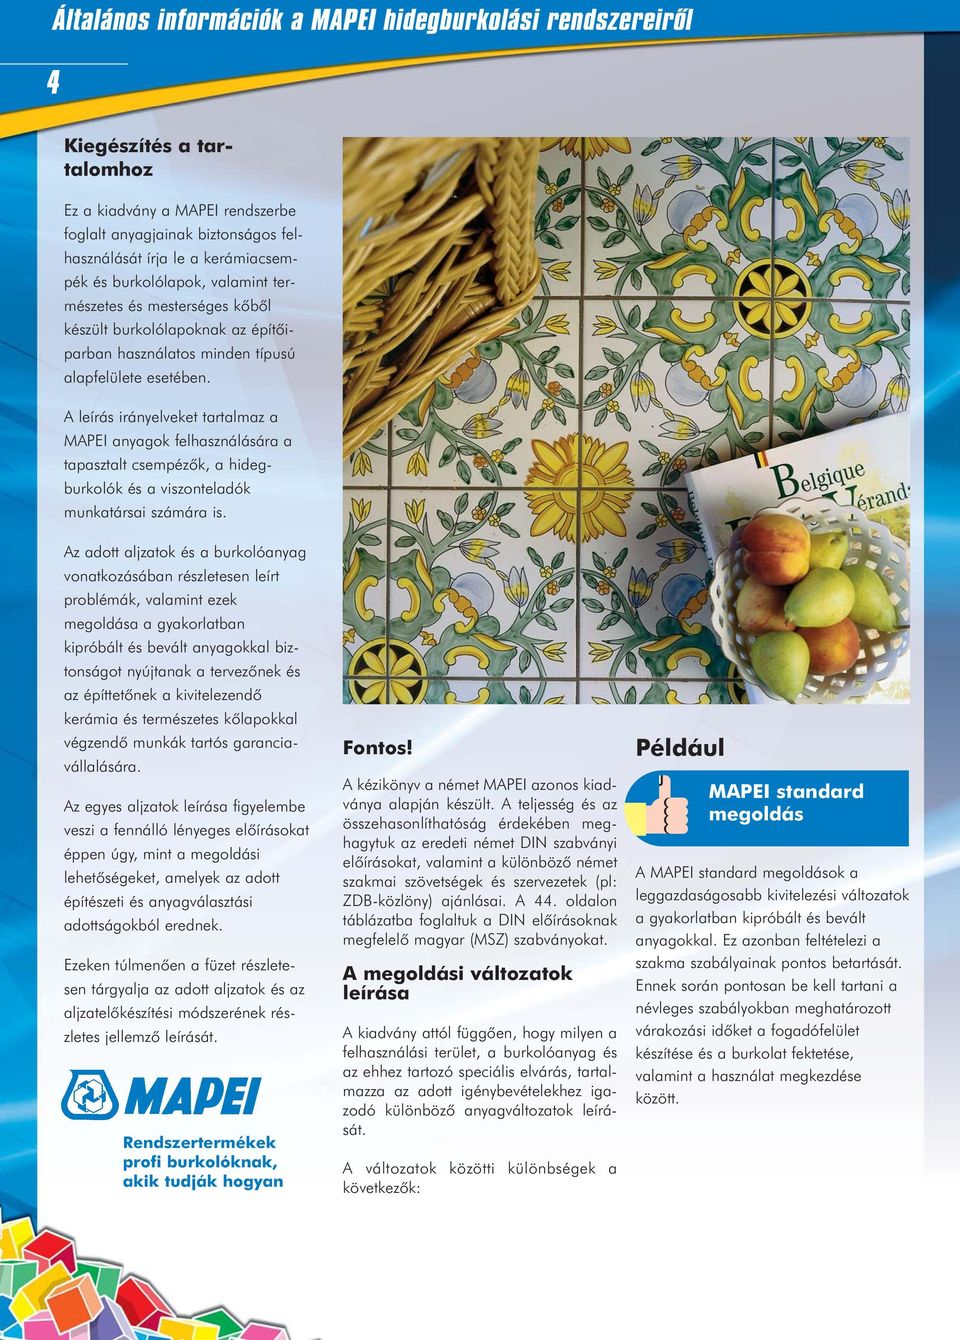 A leírás irányelveket tartalmaz a MAPEI anyagok felhasználására a tapasztalt csempézõk, a hidegburkolók és a viszonteladók munkatársai számára is.